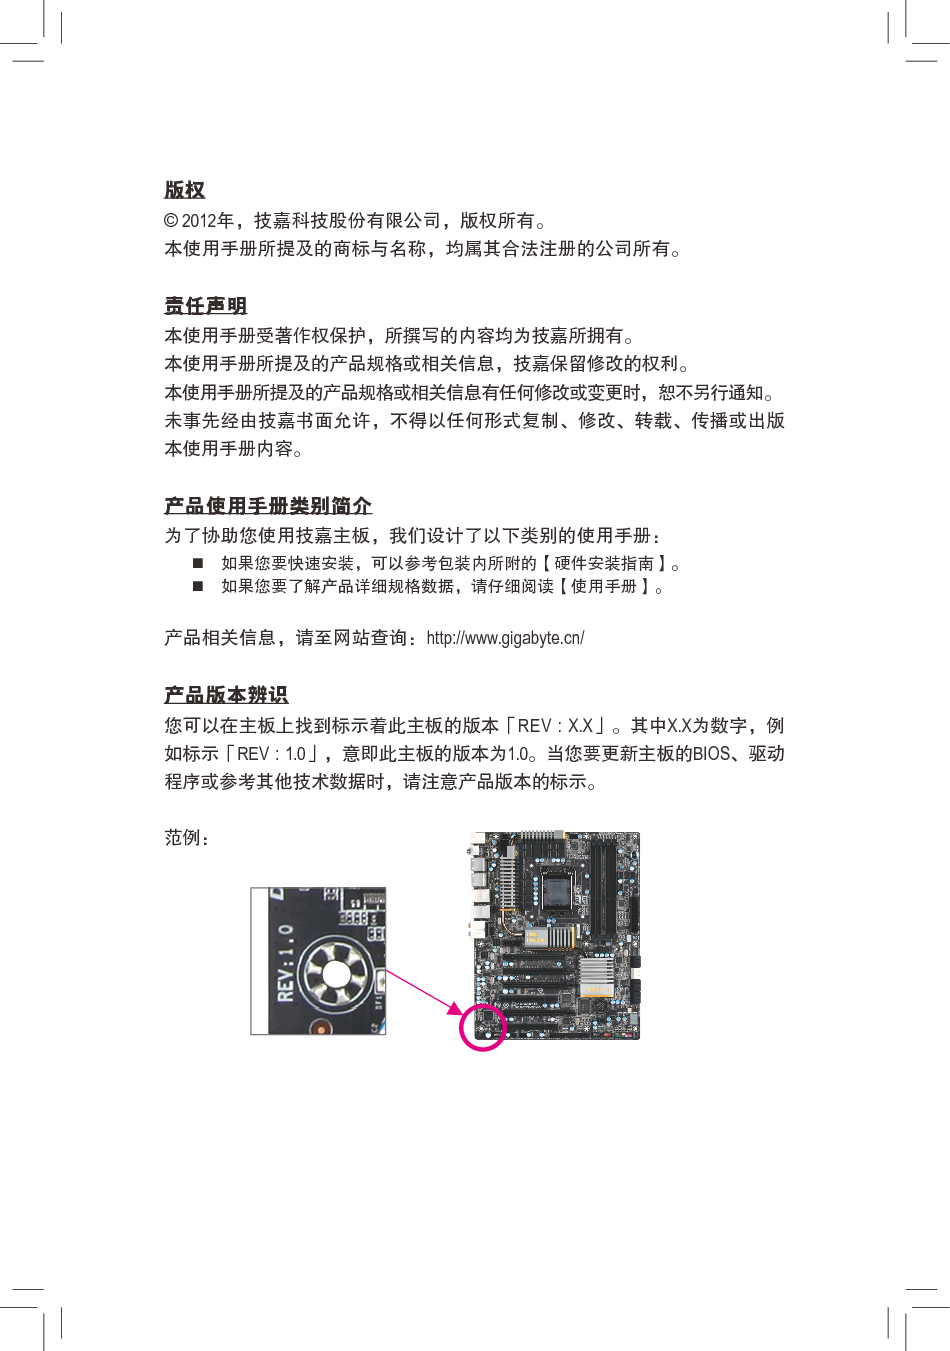 技嘉 Gigabyte GA-Z77X-D3H 使用手册 第2页